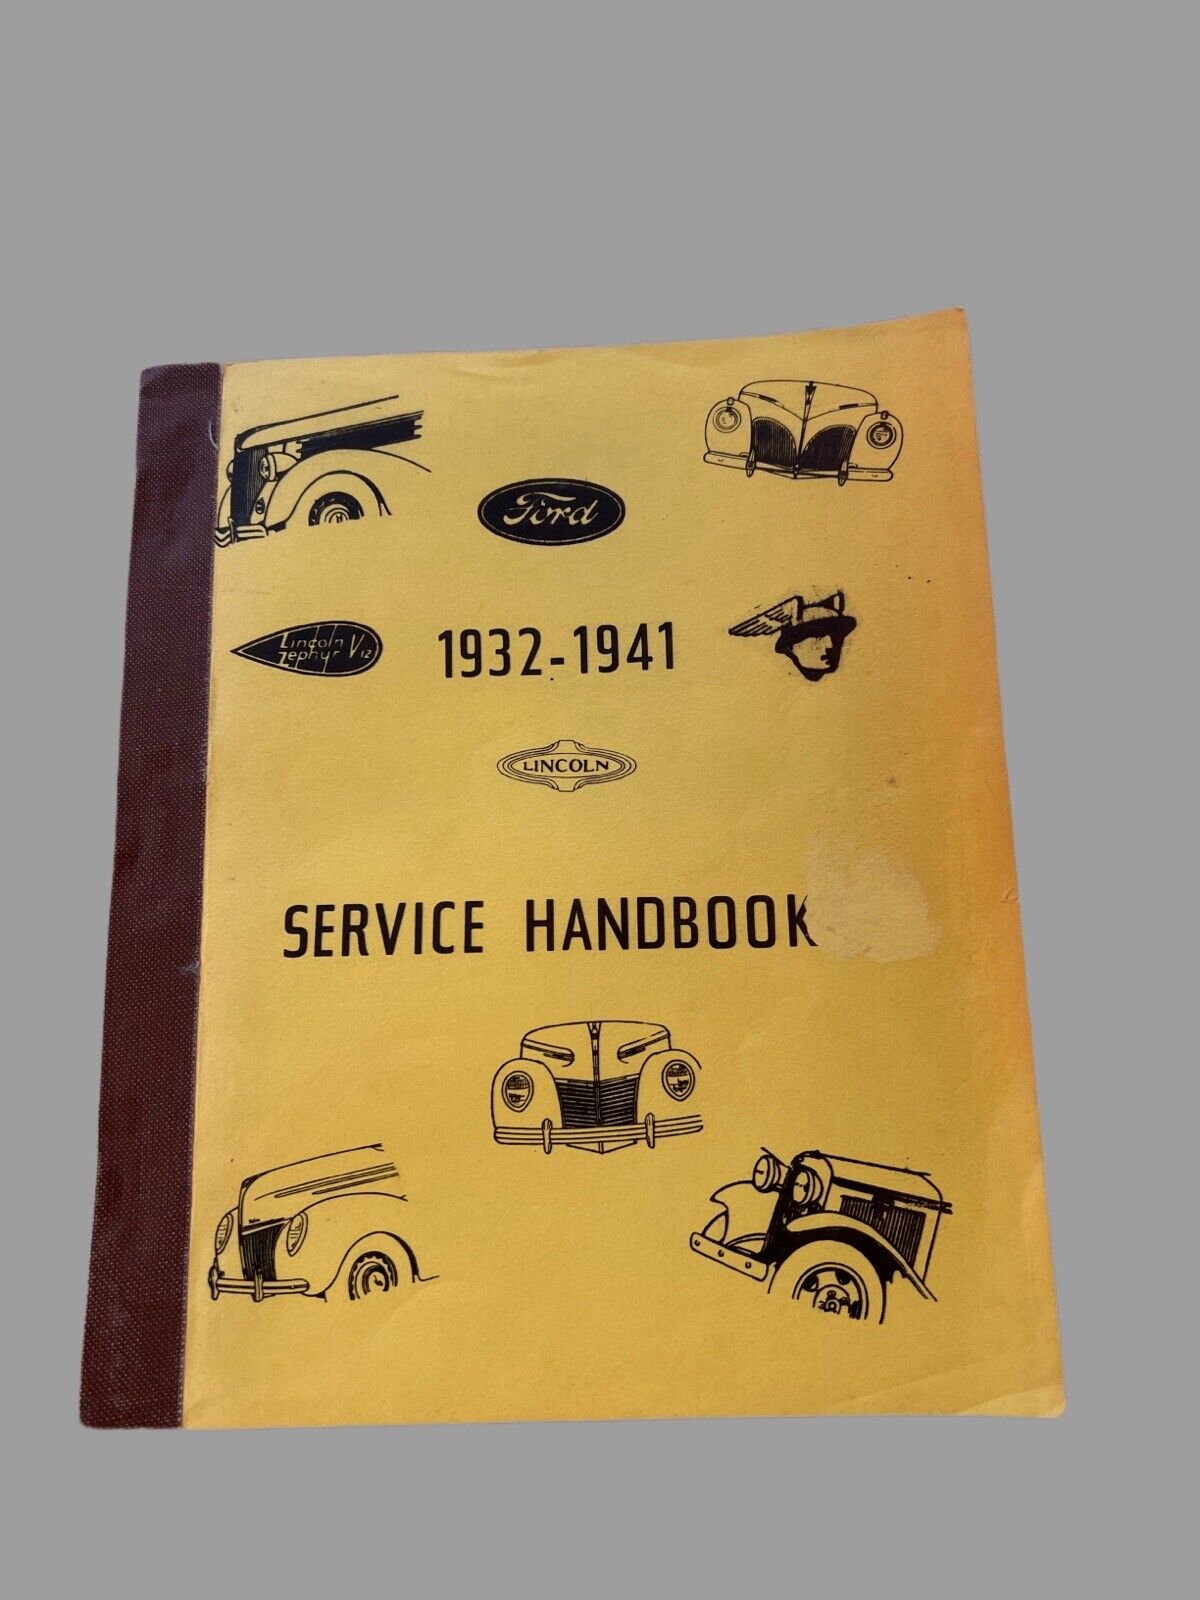 1932-1941 Ford Motor Co., Lincoln Zephyr Service Handbook Crank en Hope Reprint